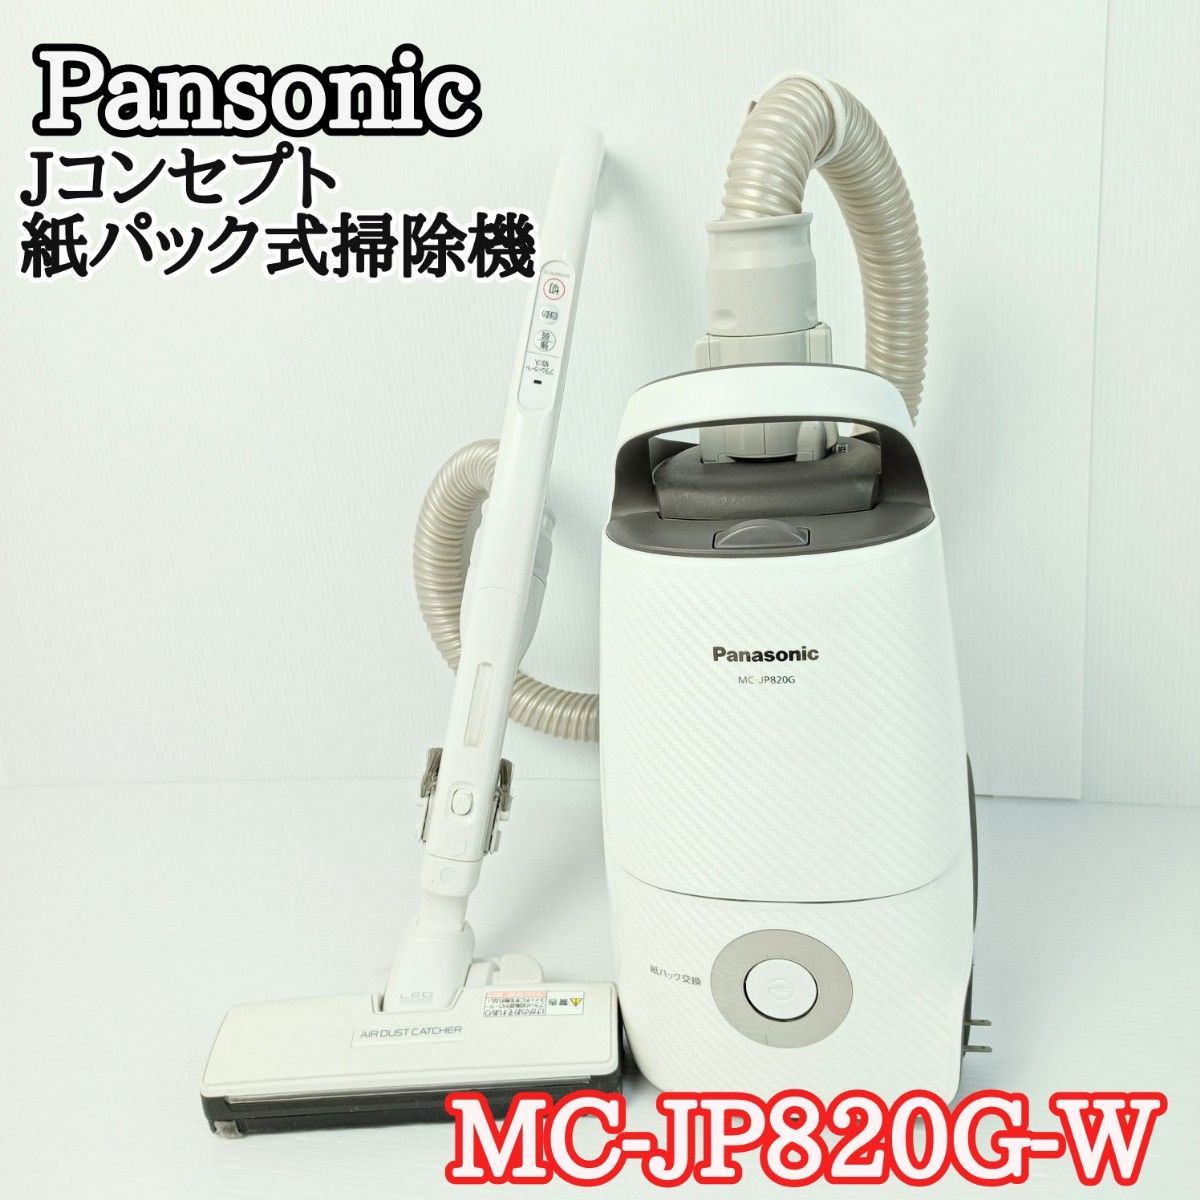 ネット限定】 Pansonic パナソニック Jコンセプト 紙パック式掃除機 MC